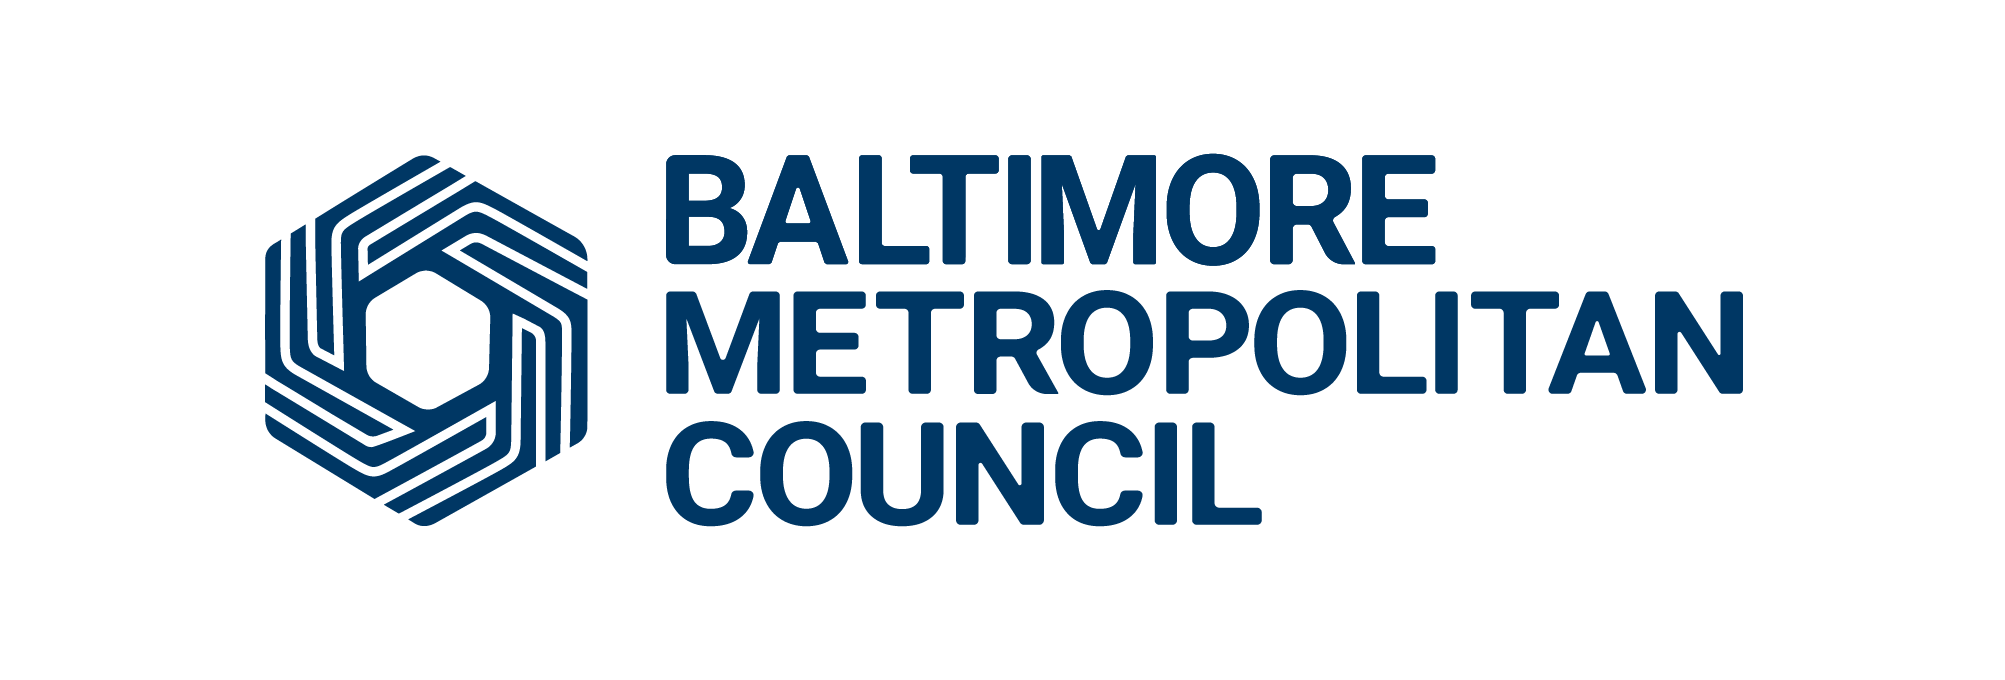 Baltimore Metropolitan Council logo